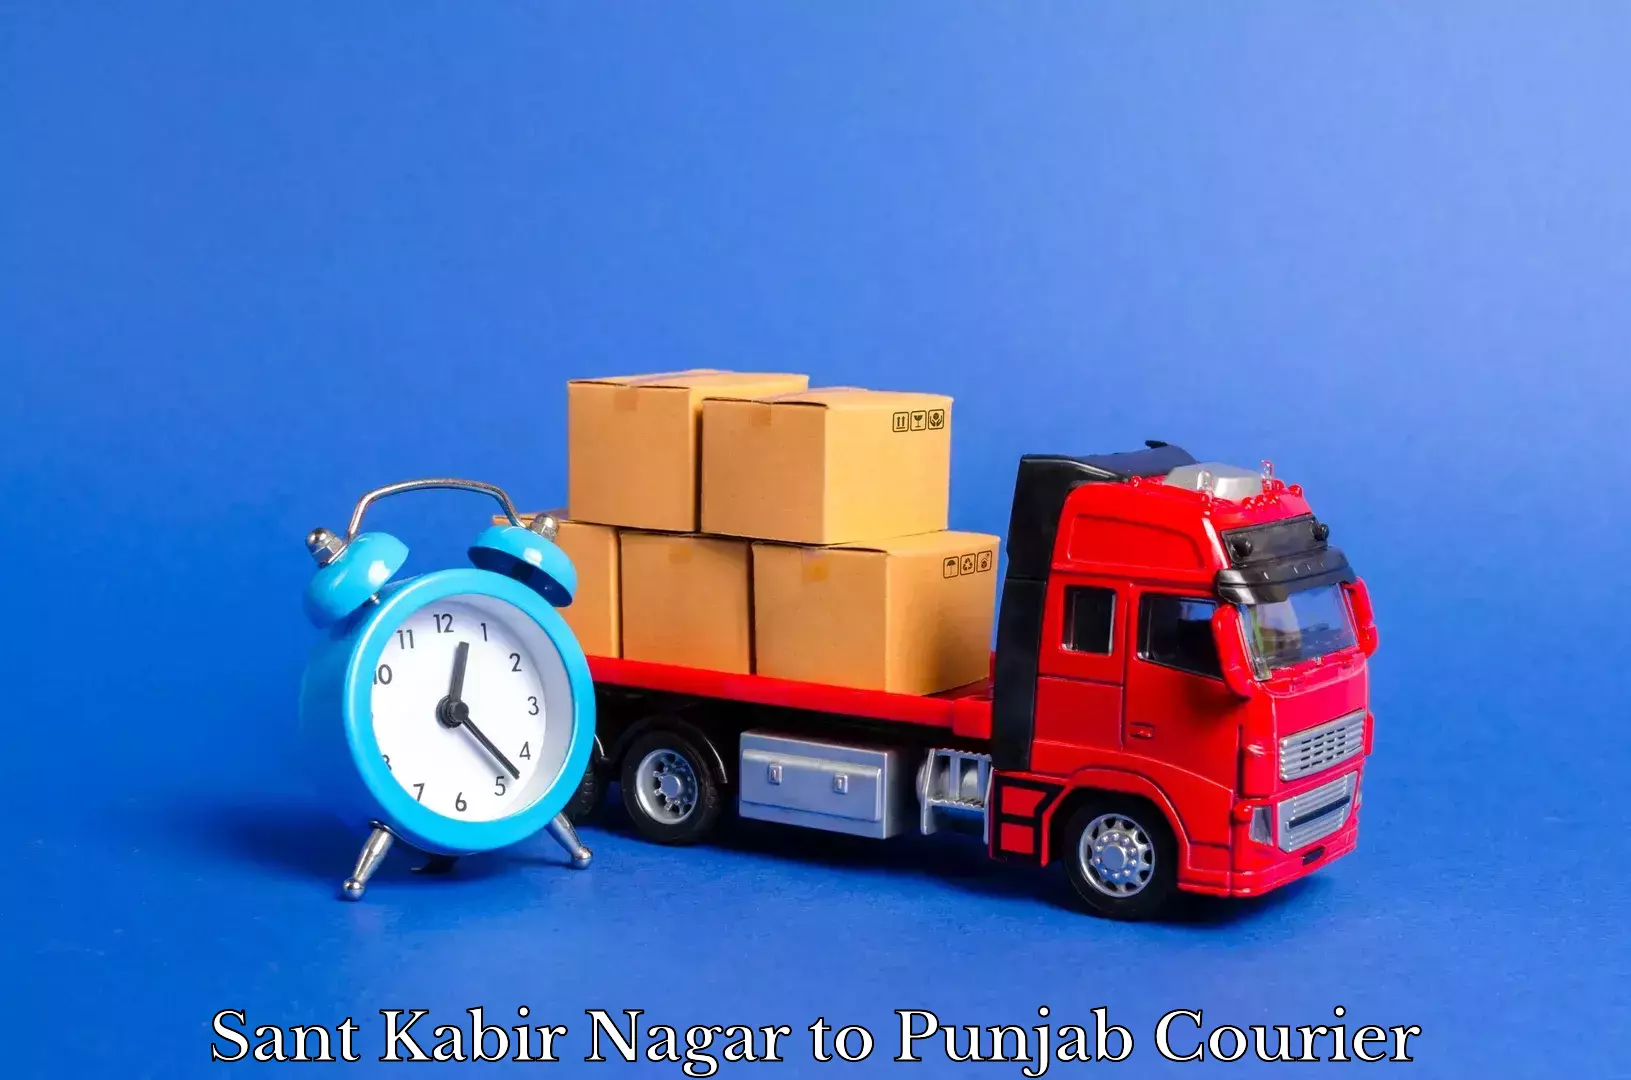 Professional furniture movers Sant Kabir Nagar to Fazilka